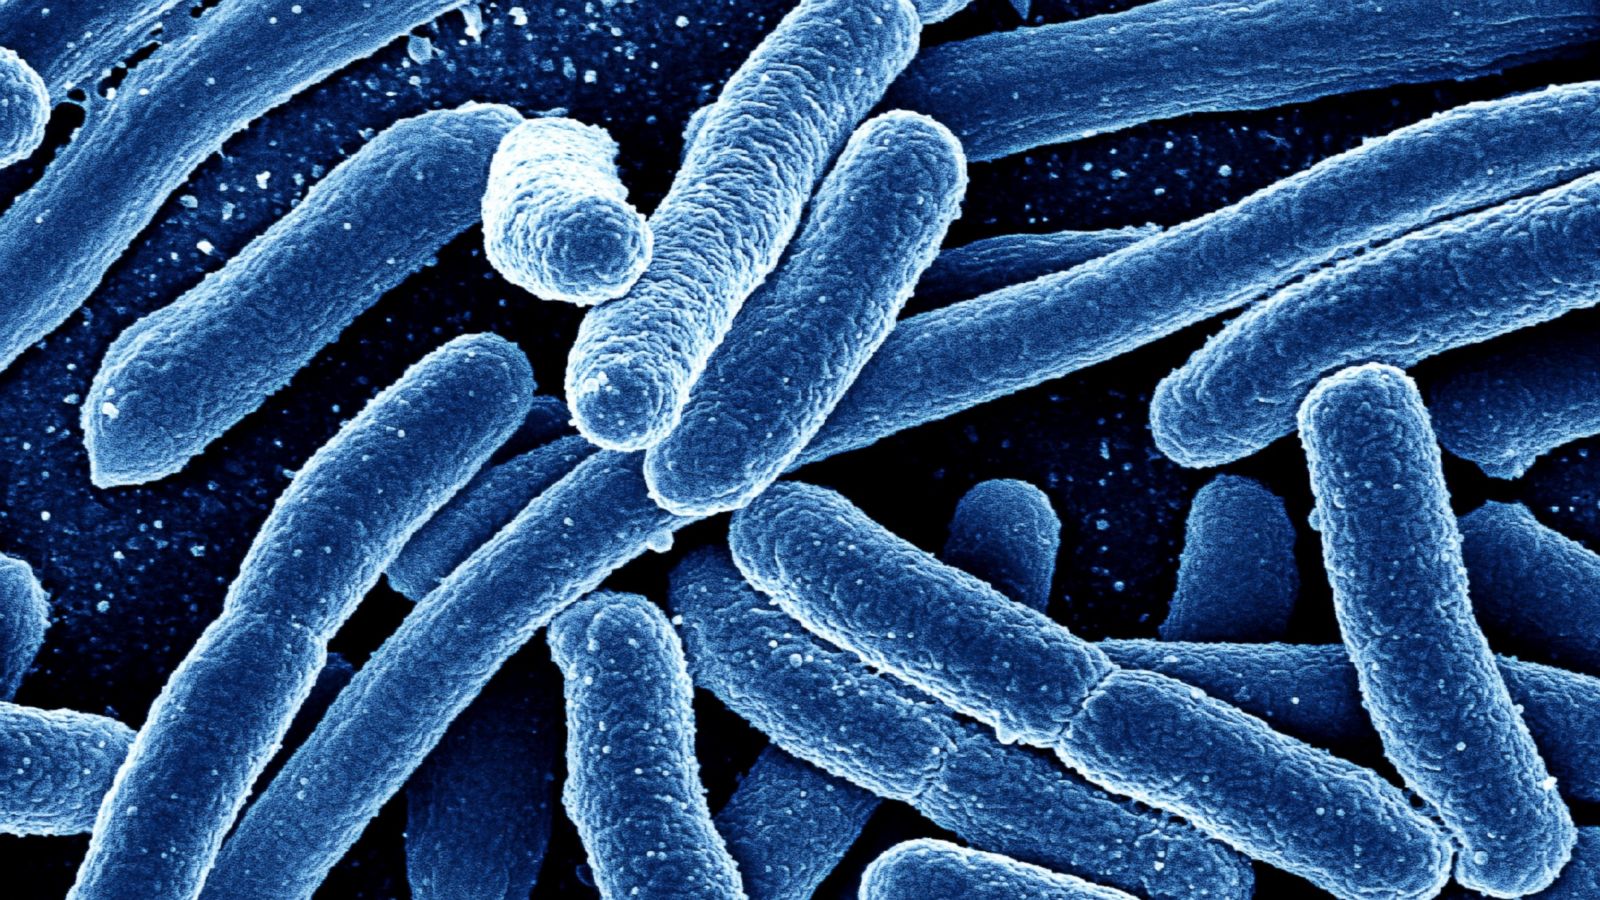 e coli bacteria